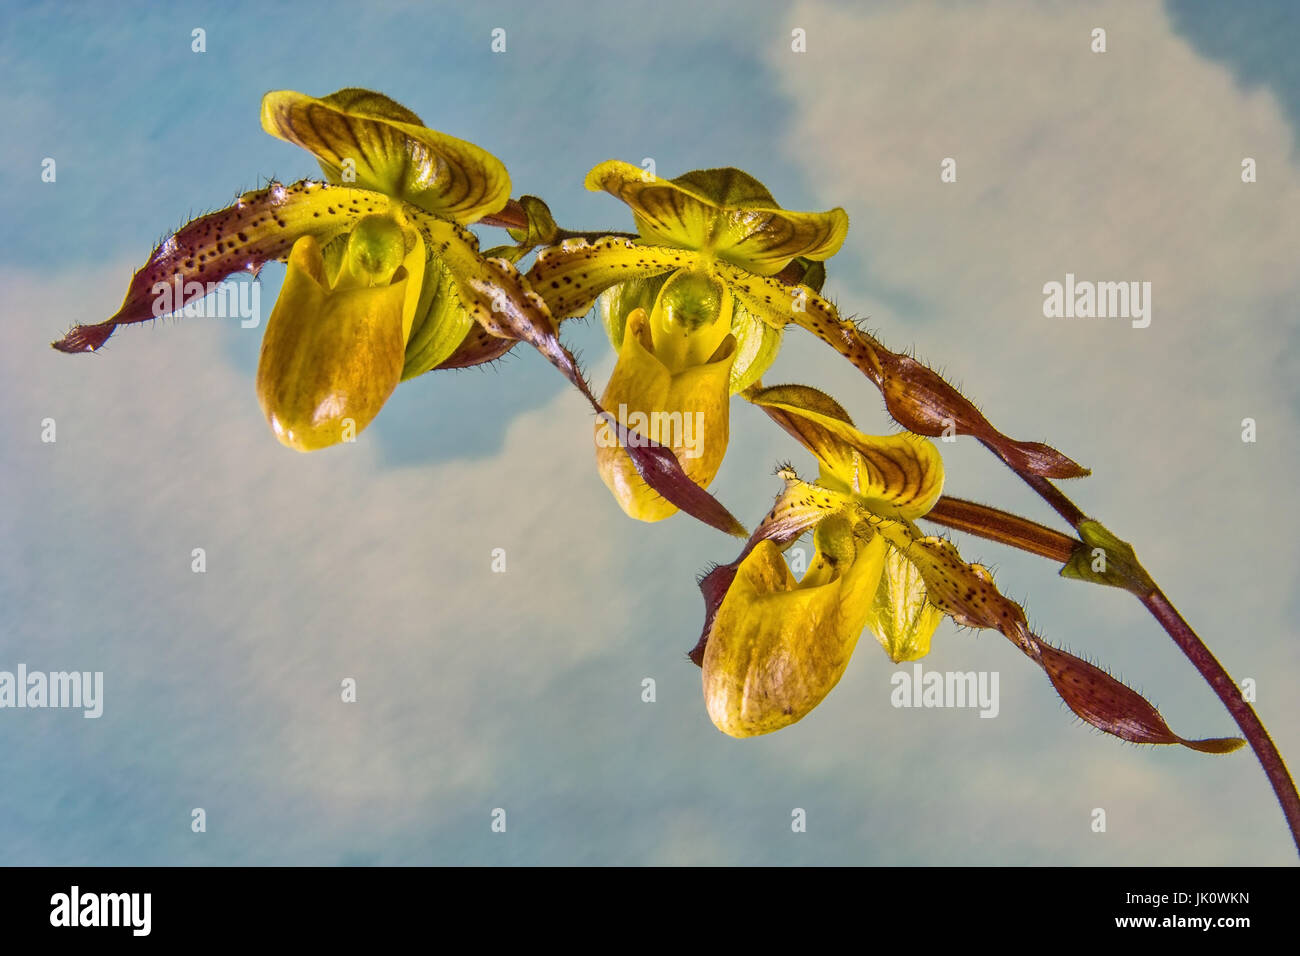 branch of a frauenschuh orchid with three blossoms before blue sky with white clouds, zweig einer frauenschuh-orchidee mit drei blueten vor blauem him Stock Photo